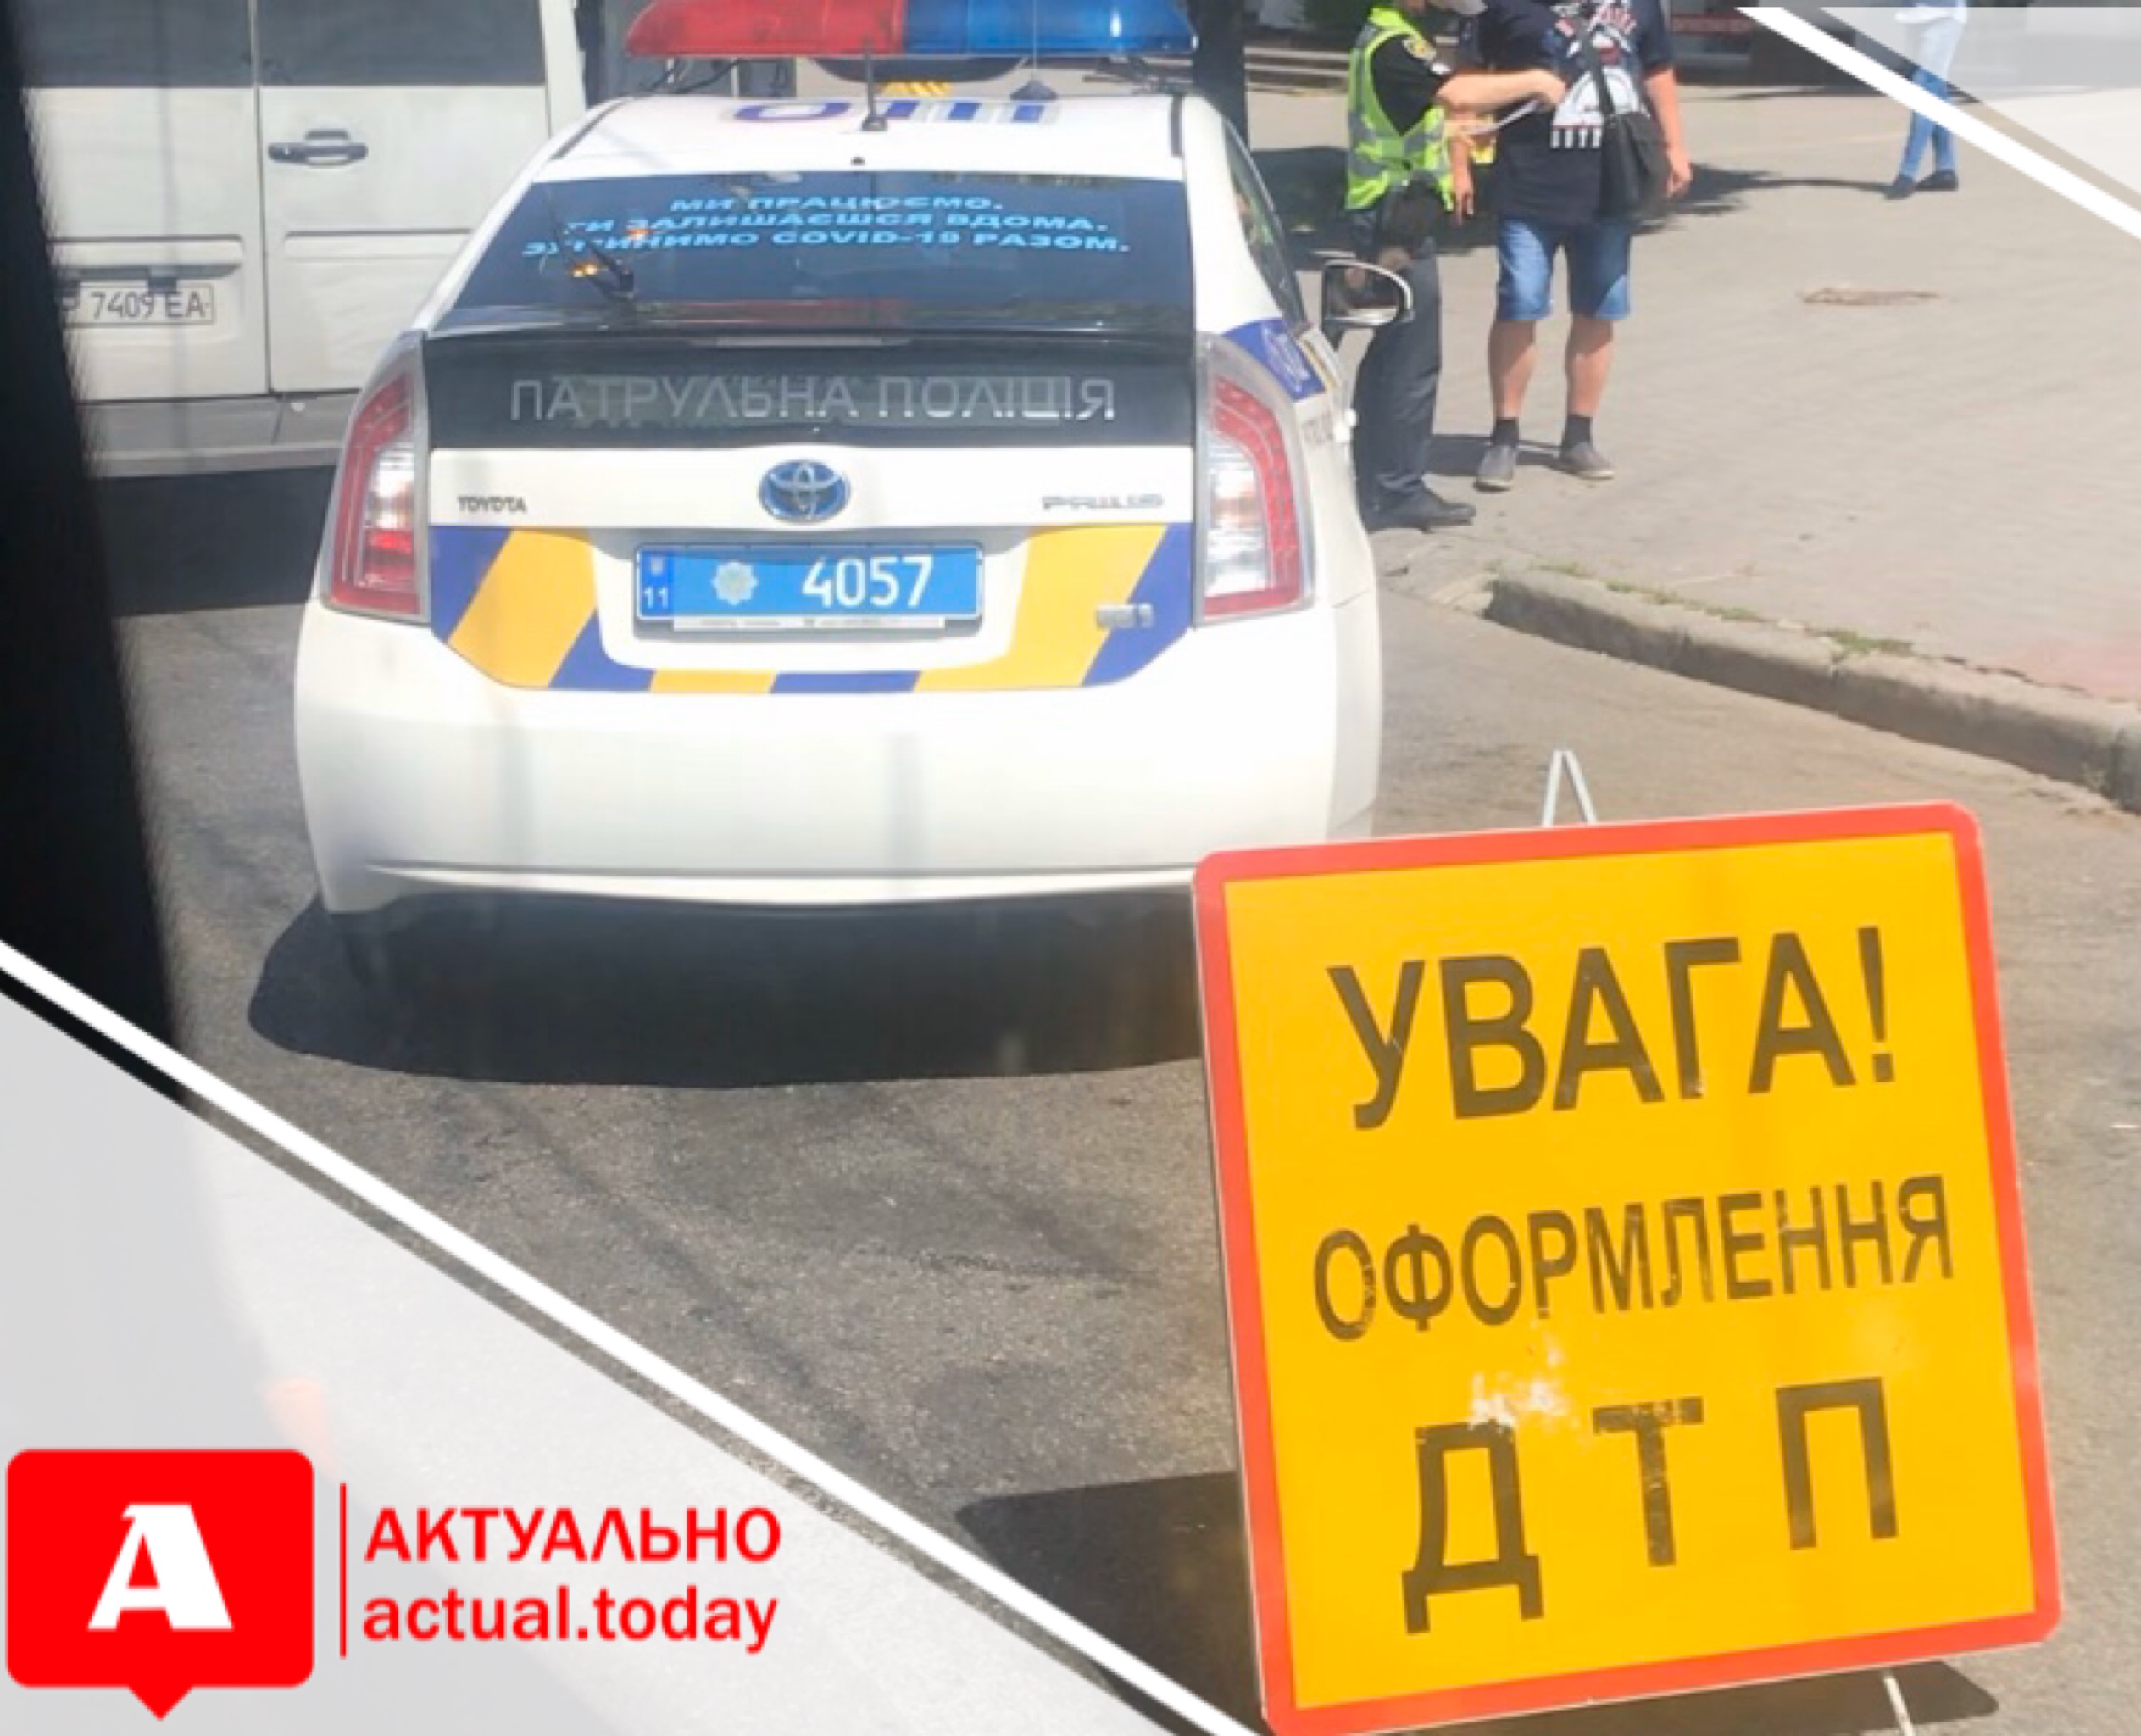 Пострадало 5 человек: подробности аварии с маршруткой и внедорожником в Запорожье на проспекте (ВИДЕО)